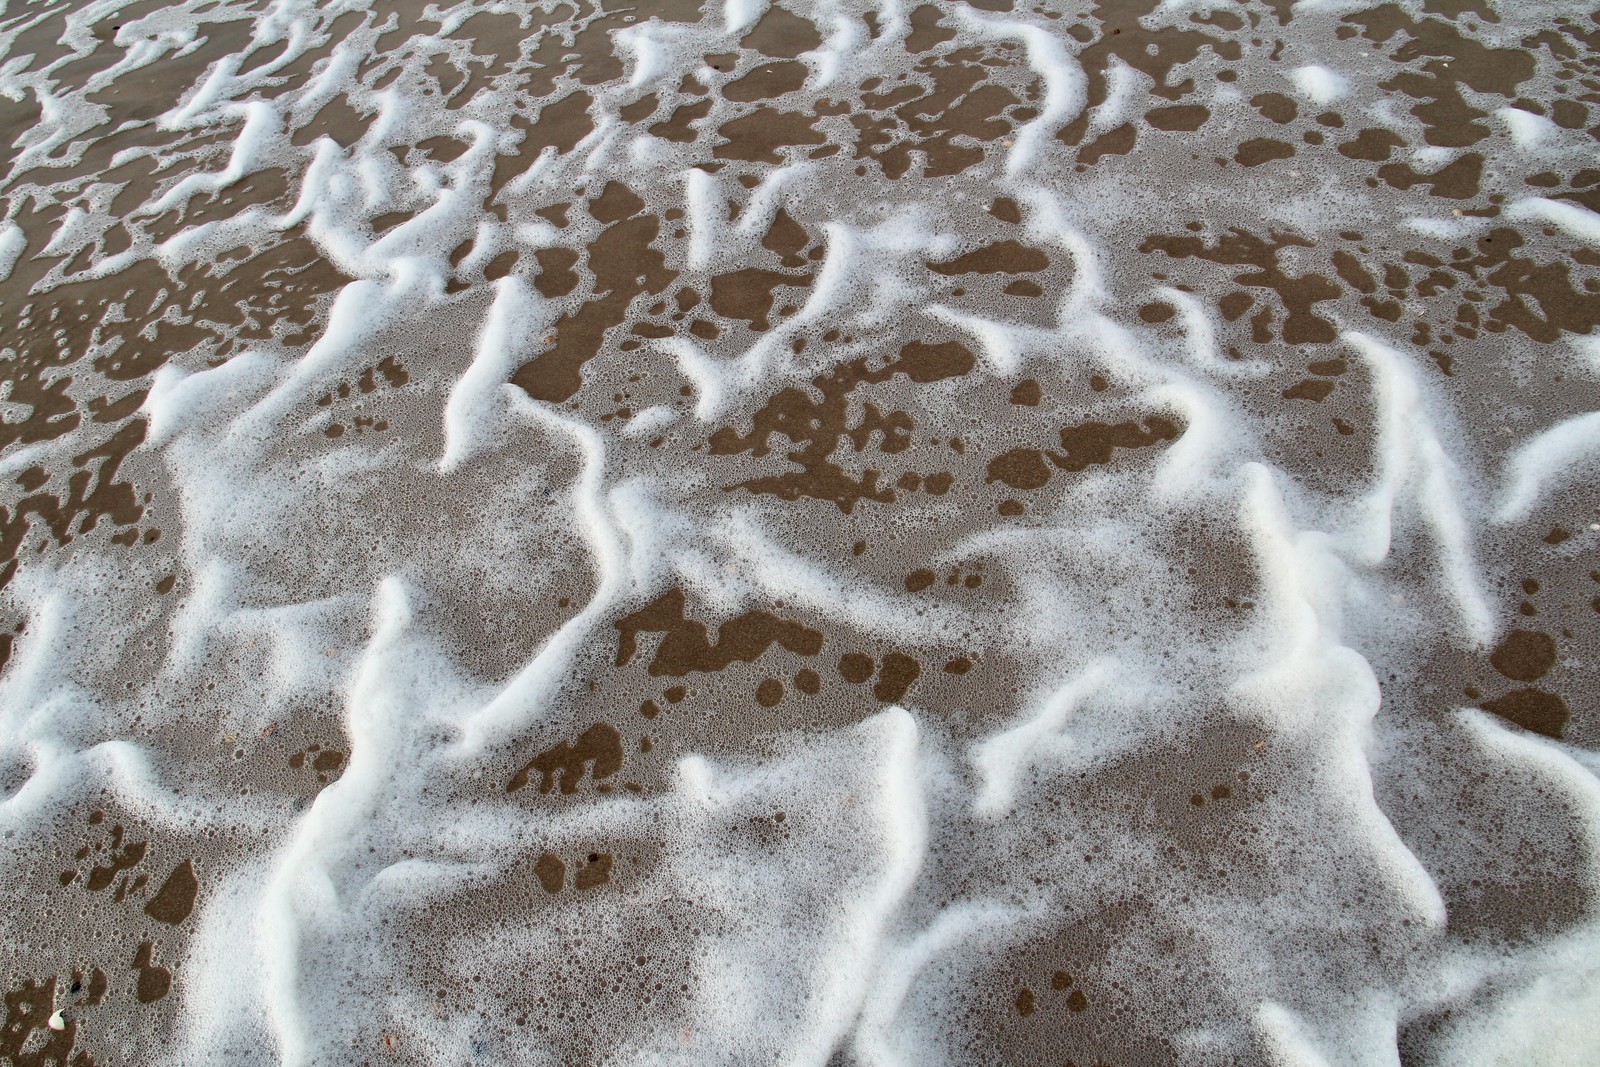 Foamy patterns